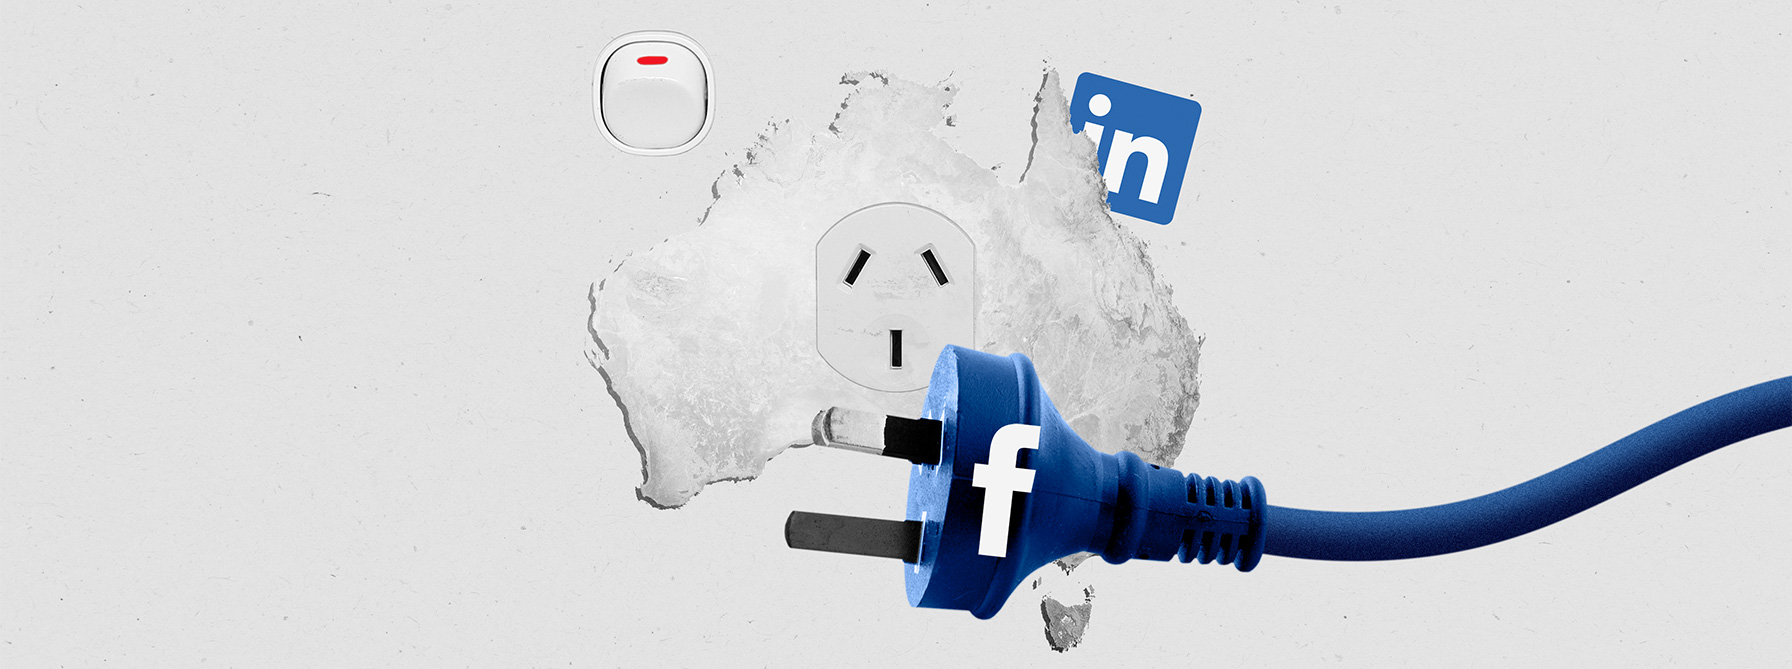 Facebook pulls the plug on Australian media